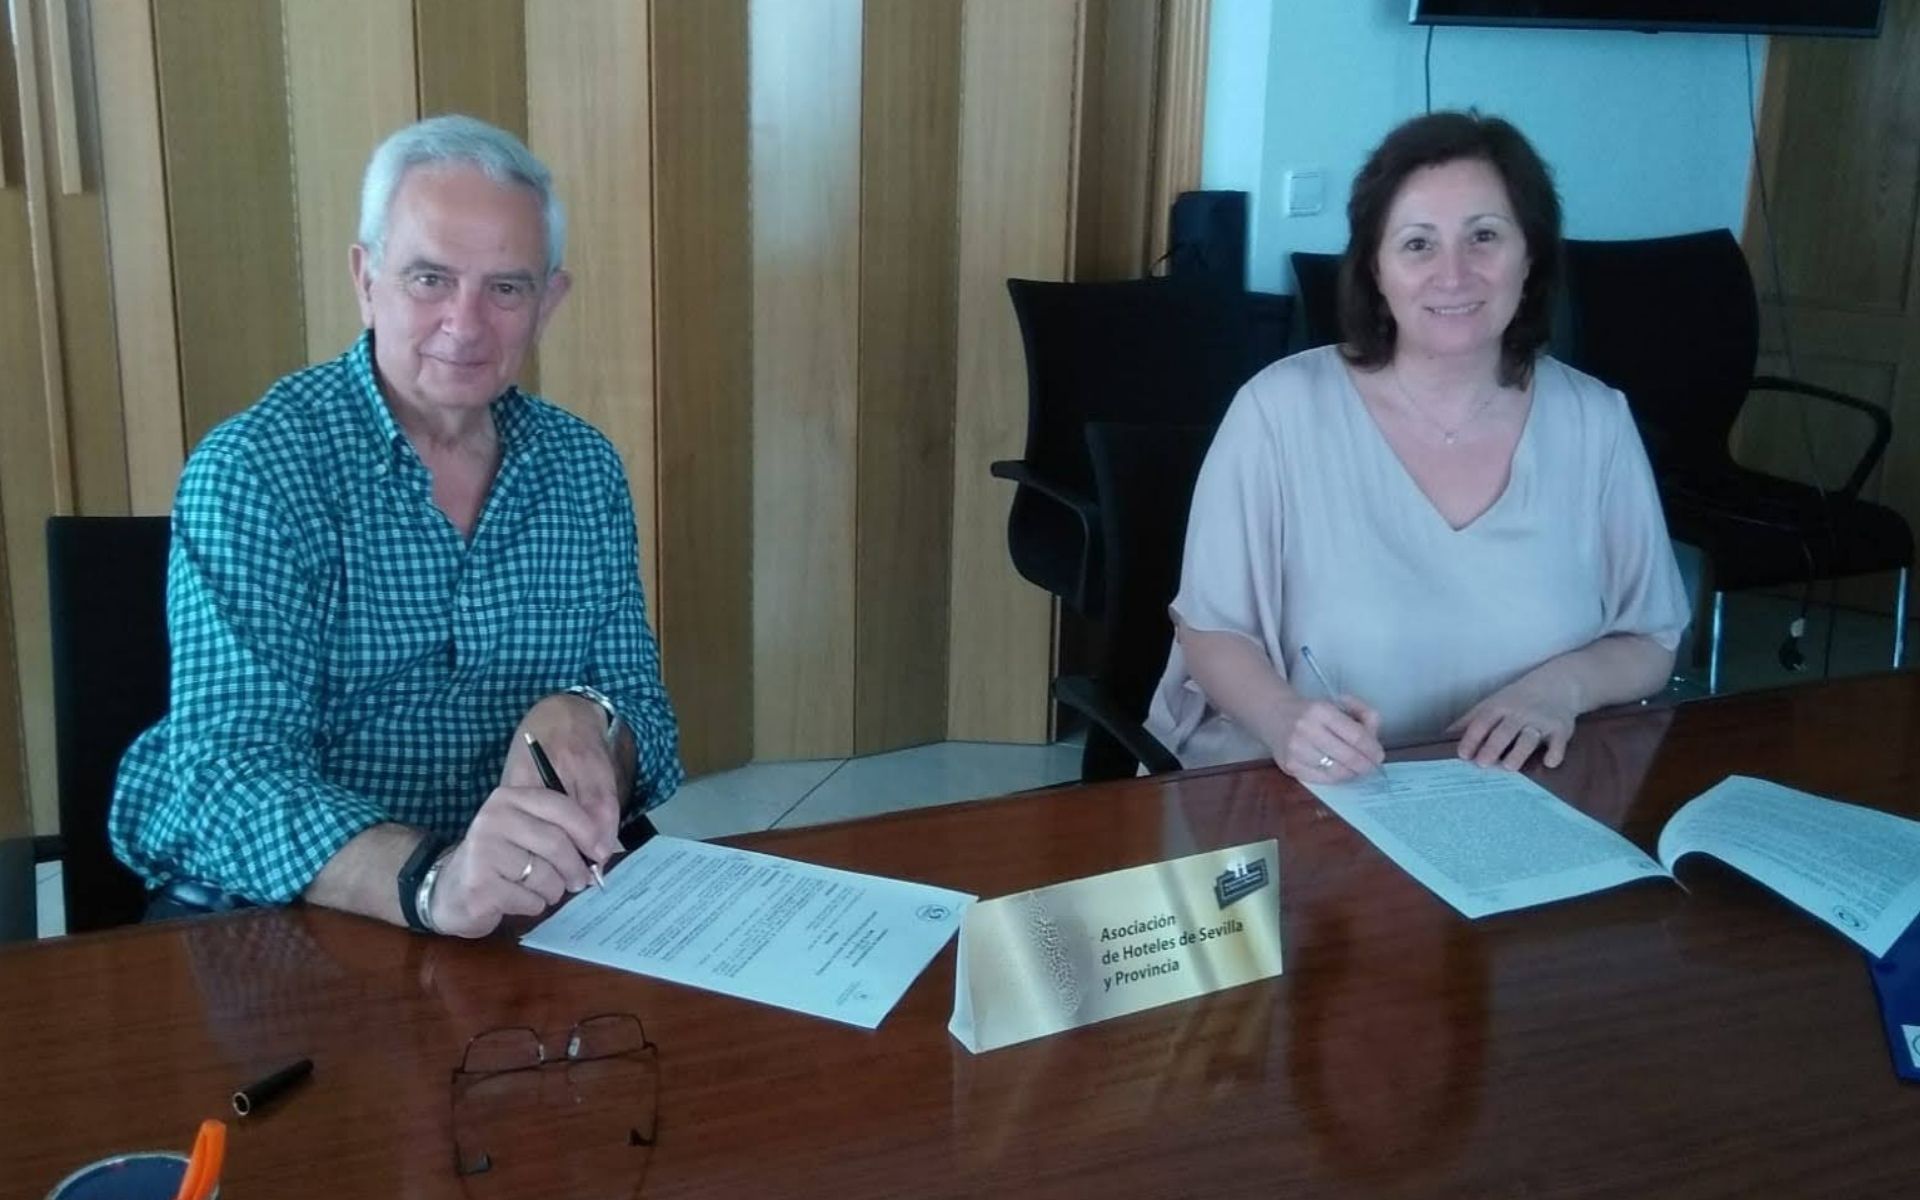 COYSalud establece un acuerdo de colaboración con la Asociación de Hoteles de Sevilla y provincia